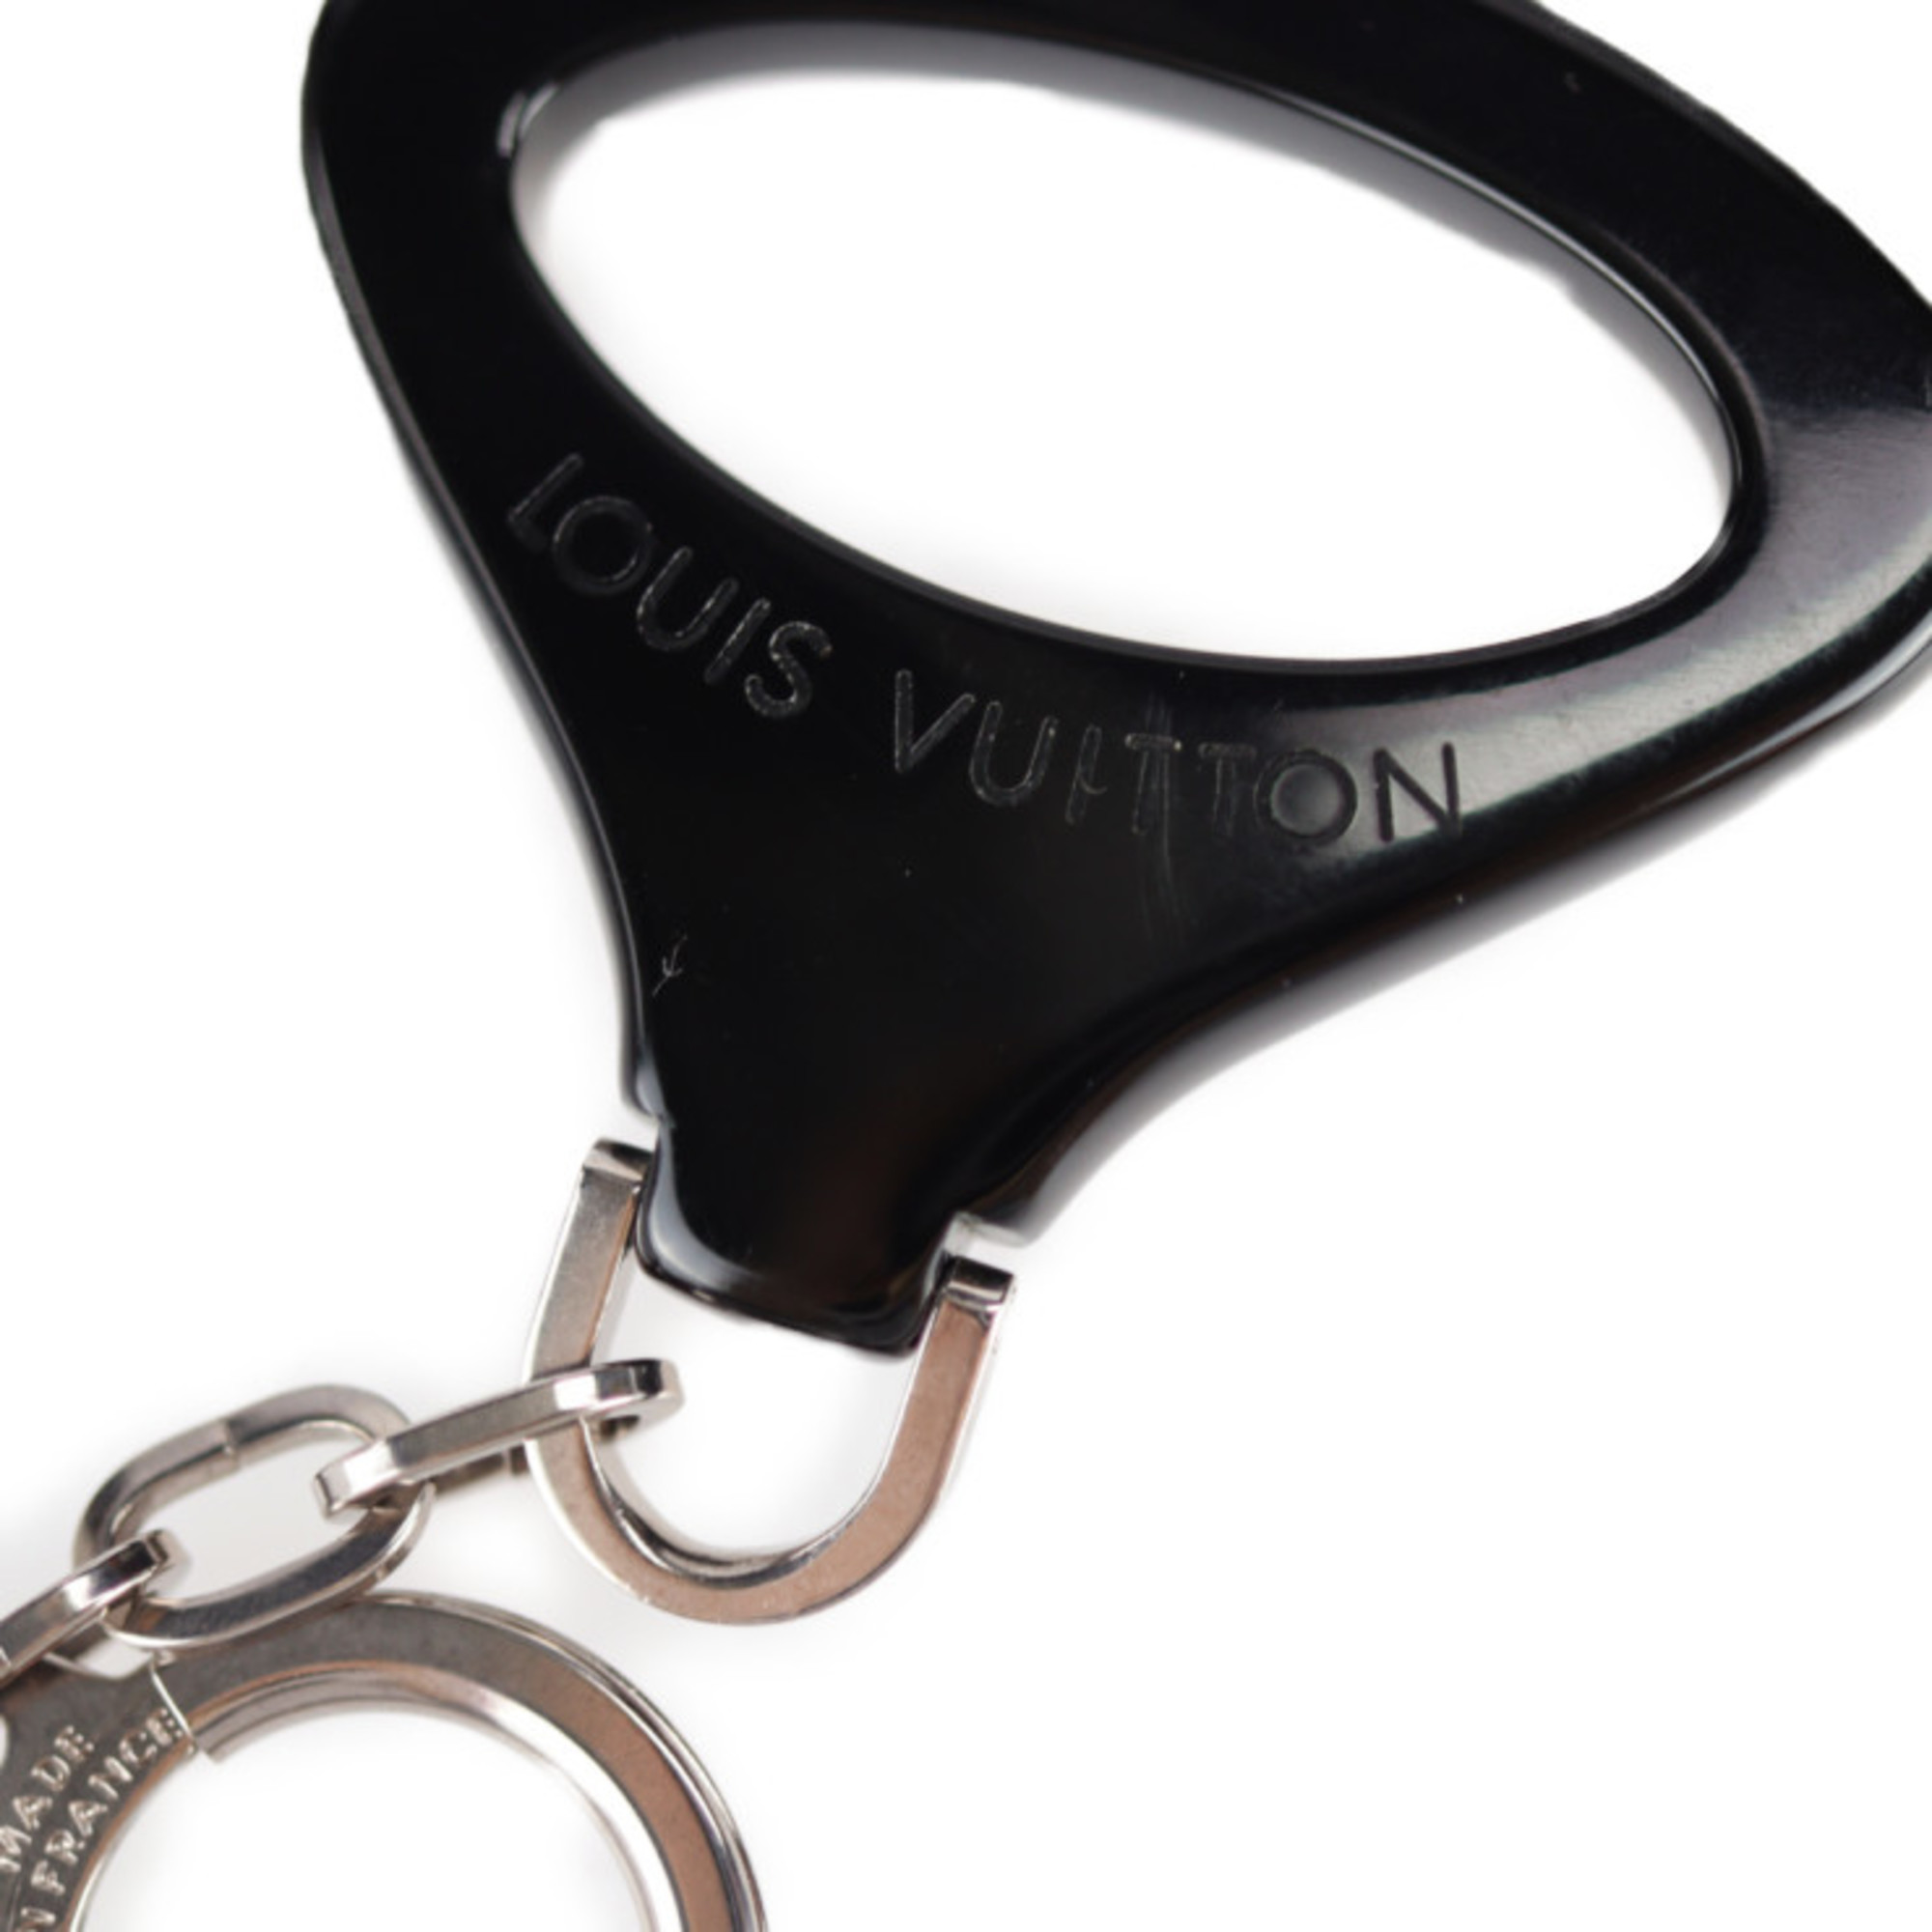 LOUIS VUITTON Louis Vuitton Portocre Epi Z Keychain M63832 Plastic Metal Black Silver Fittings Keyring Charm Noctanble Motif